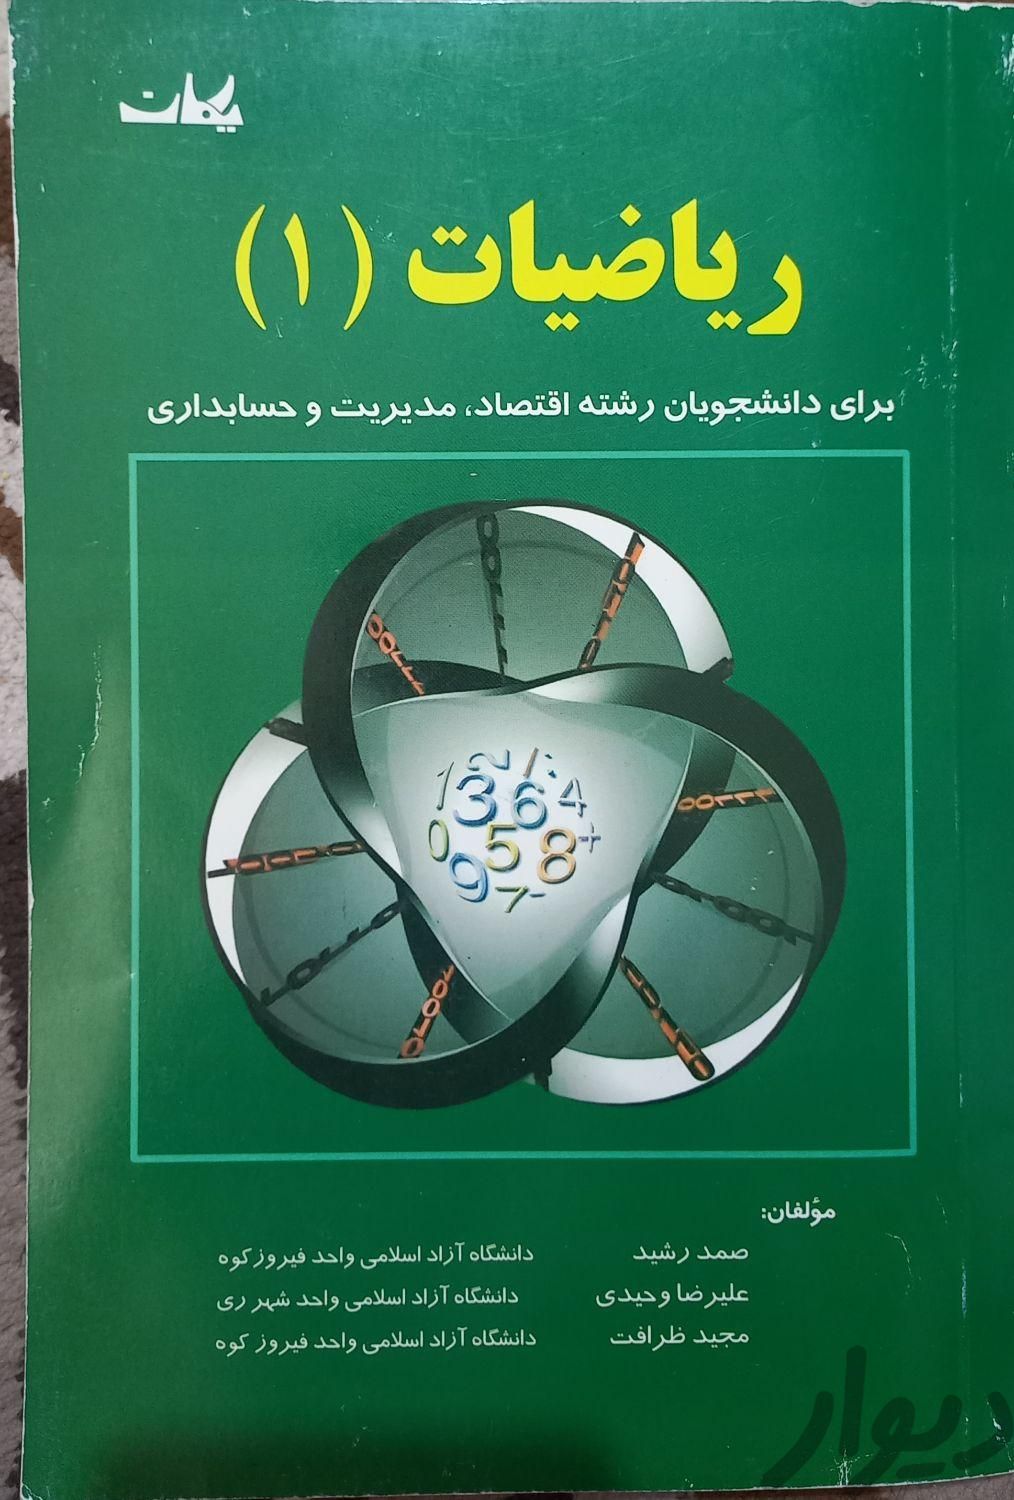 ریاضیات یک صمد رشید|کتاب و مجله آموزشی|تهران, هاشم‌آباد|دیوار